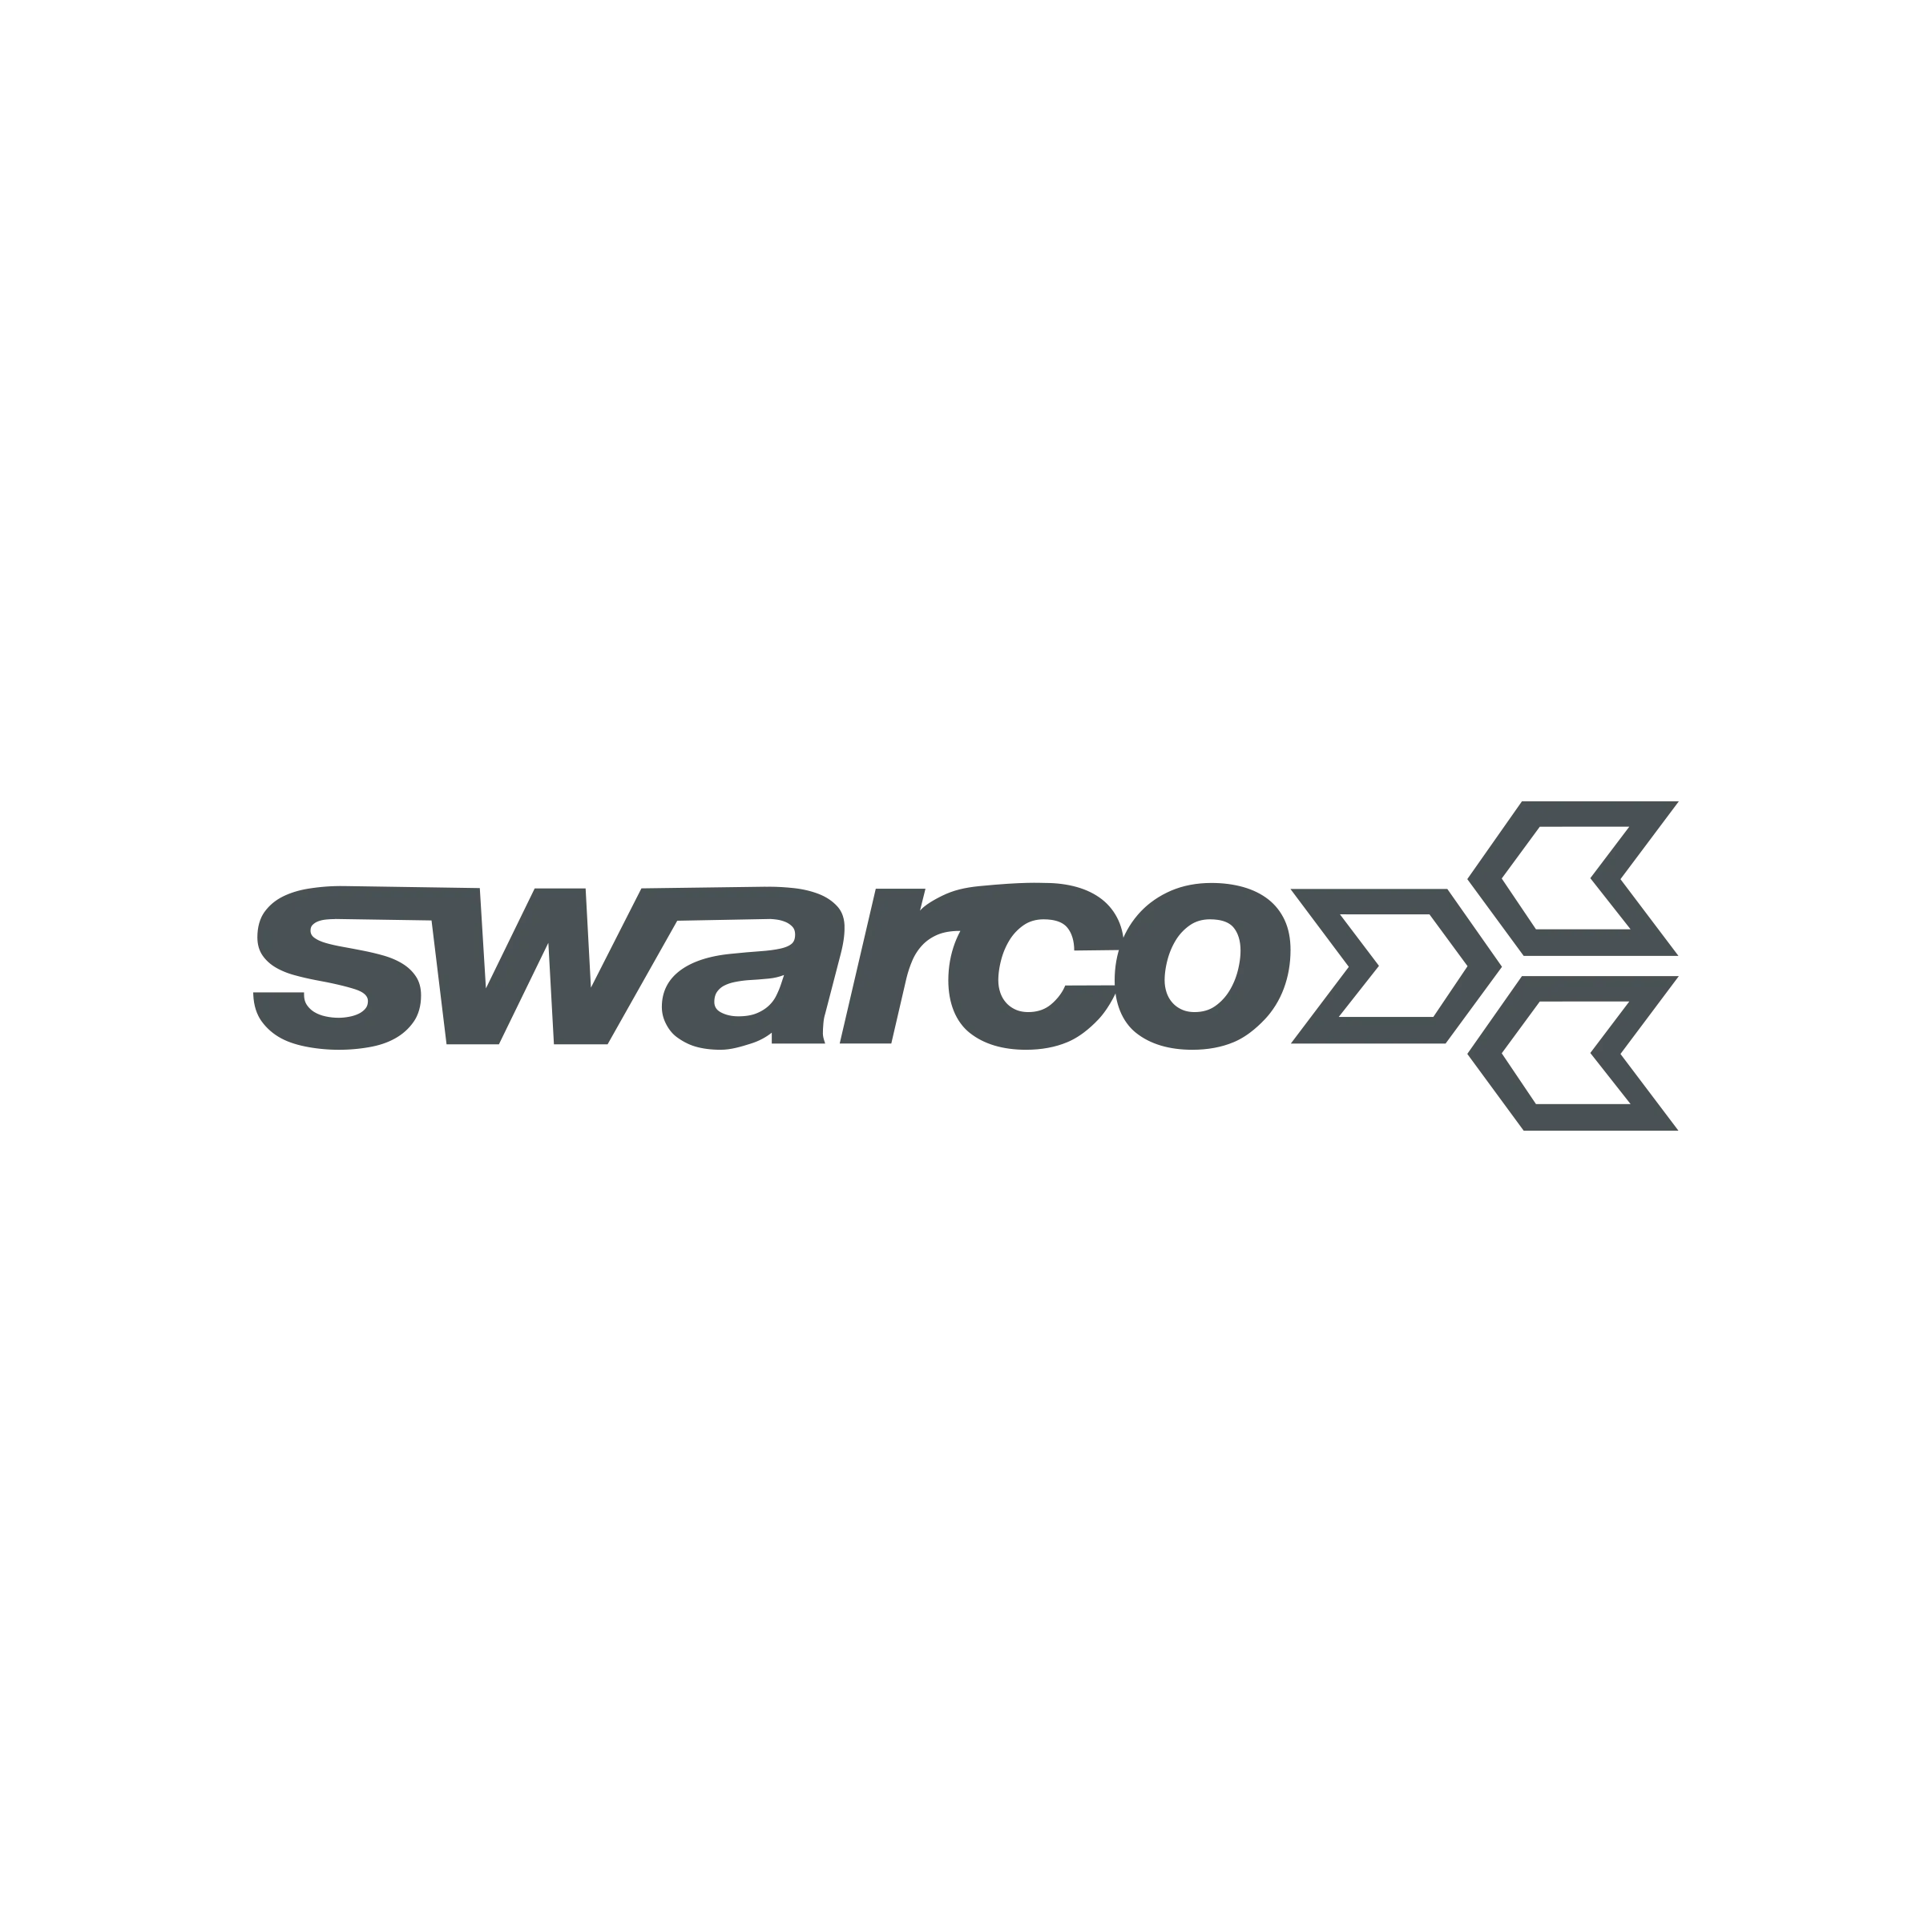 swarco logo swarco gray 1x1